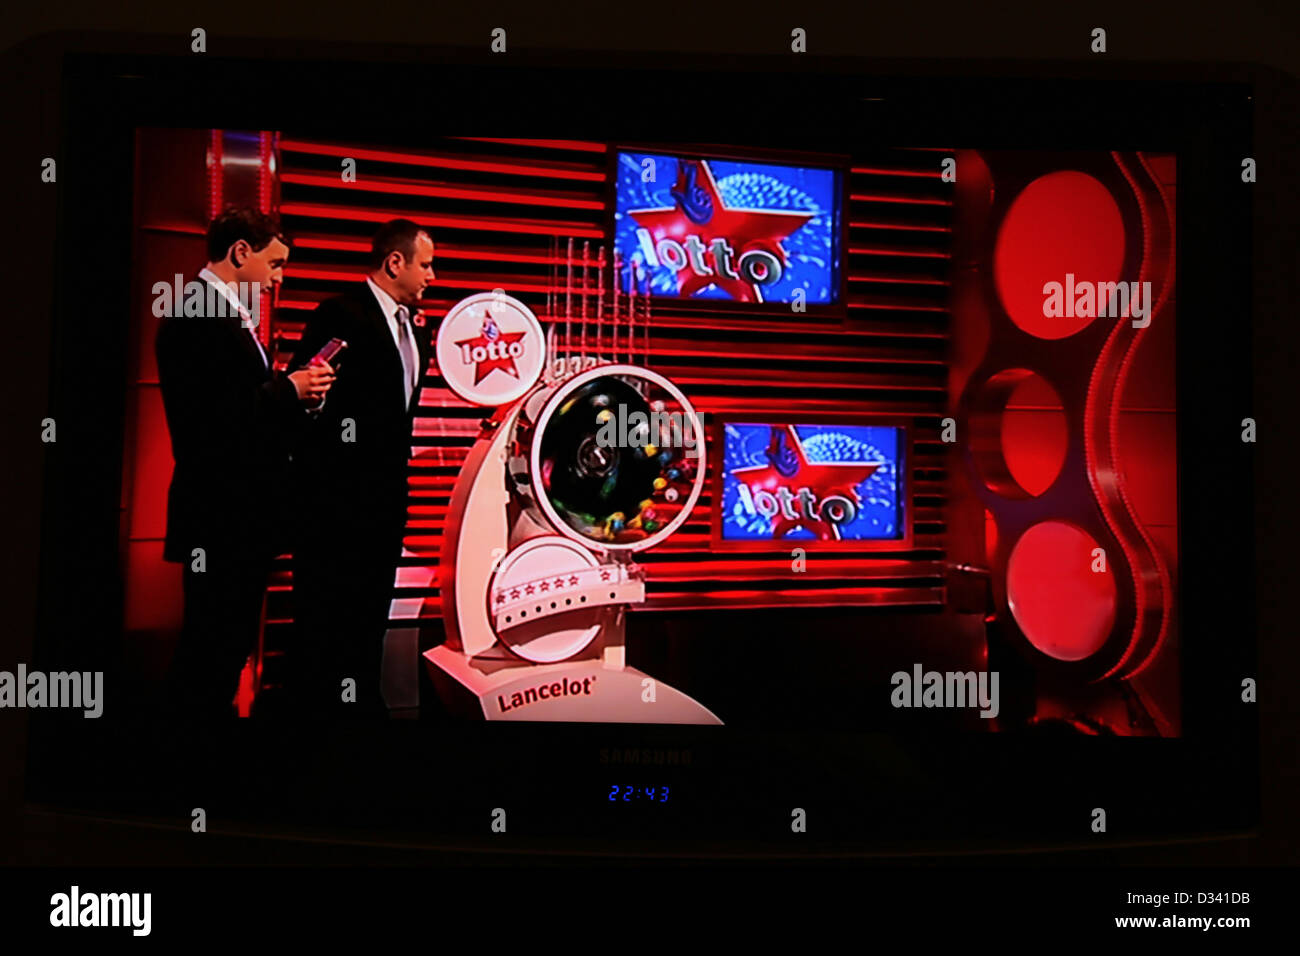 Lotto-Ziehung auf Samsung Flachbild-TV gezeigt Stockfoto